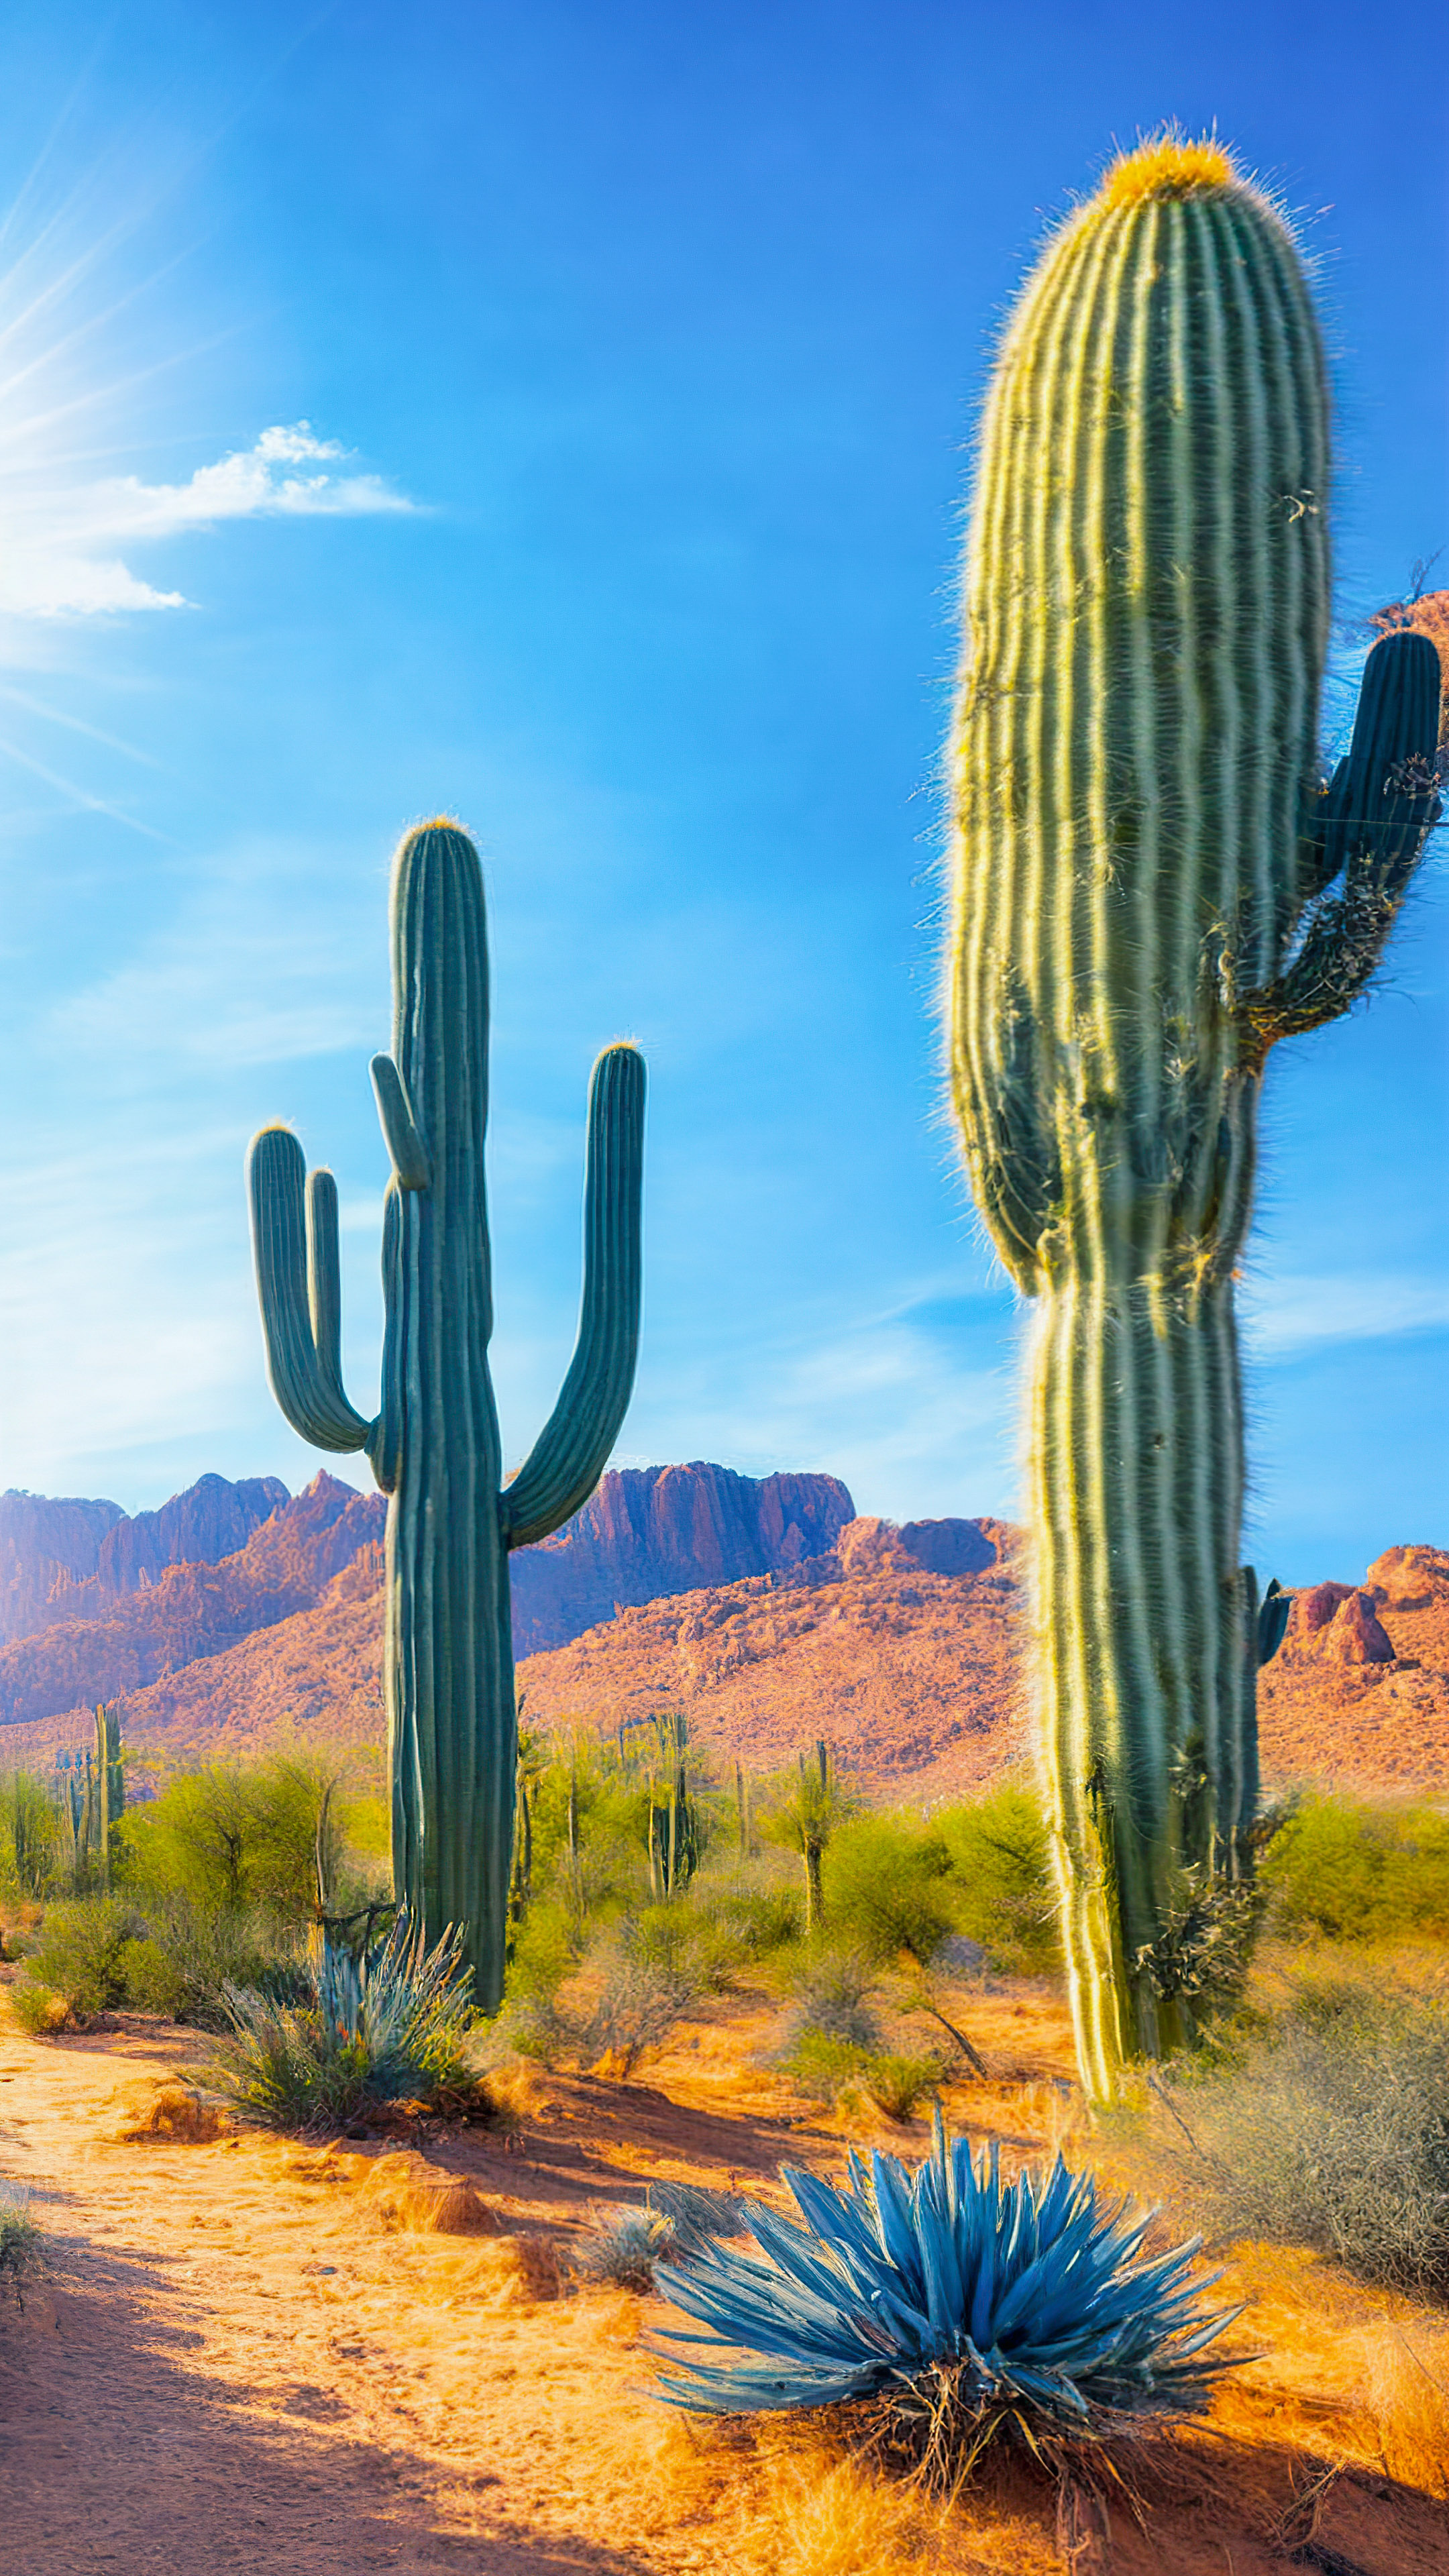 Savourez la splendeur de nos fonds d'écran nature en 4k pour iPhone, mettant en scène un paysage désertique baigné de soleil avec d'imposants cactus saguaro et un ciel bleu infini.